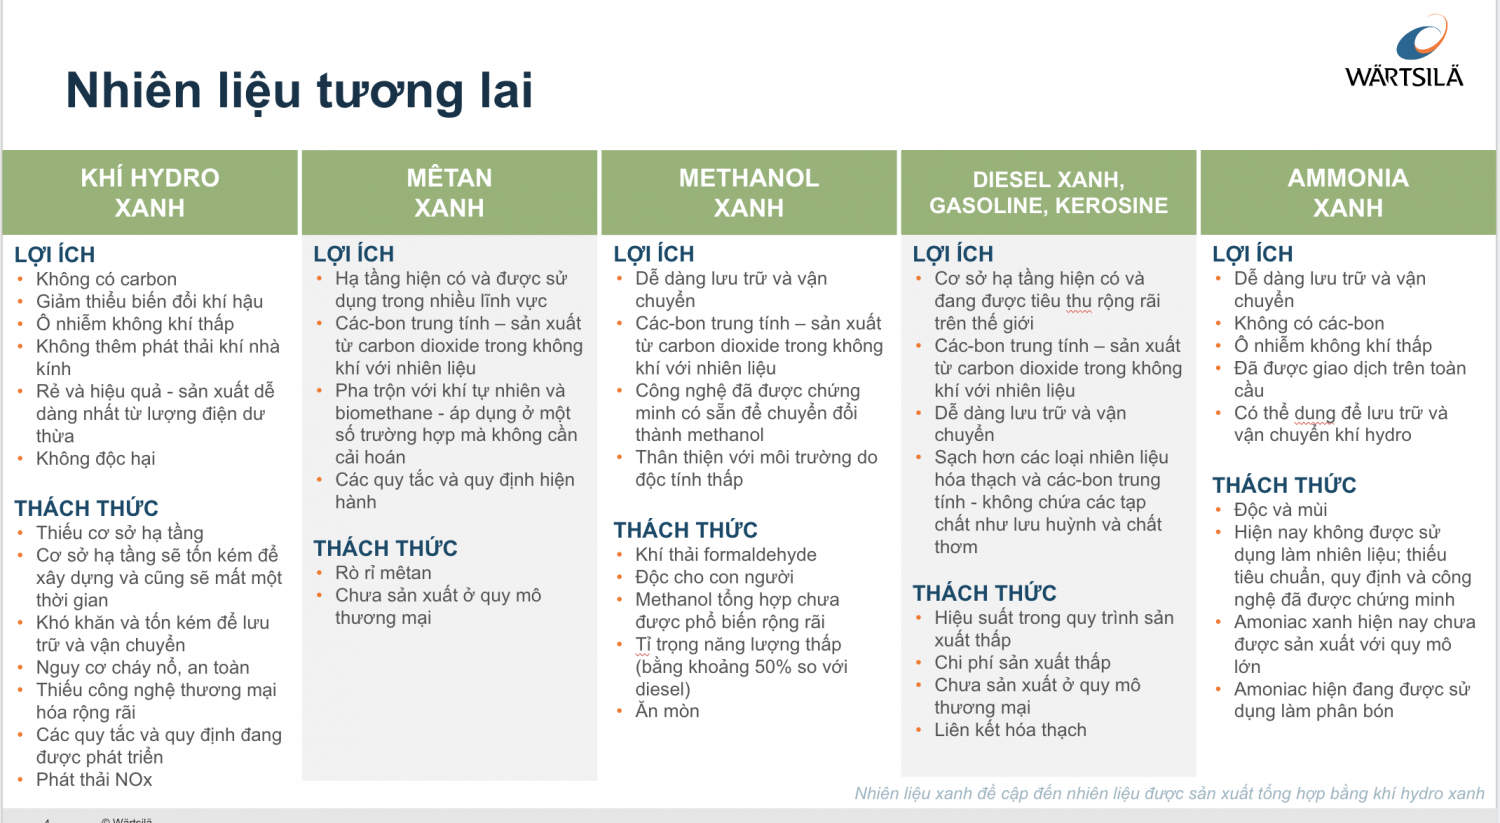 Các bước quan trọng trong lộ trình hướng tới phát thải ròng bằng 0 của Việt Nam